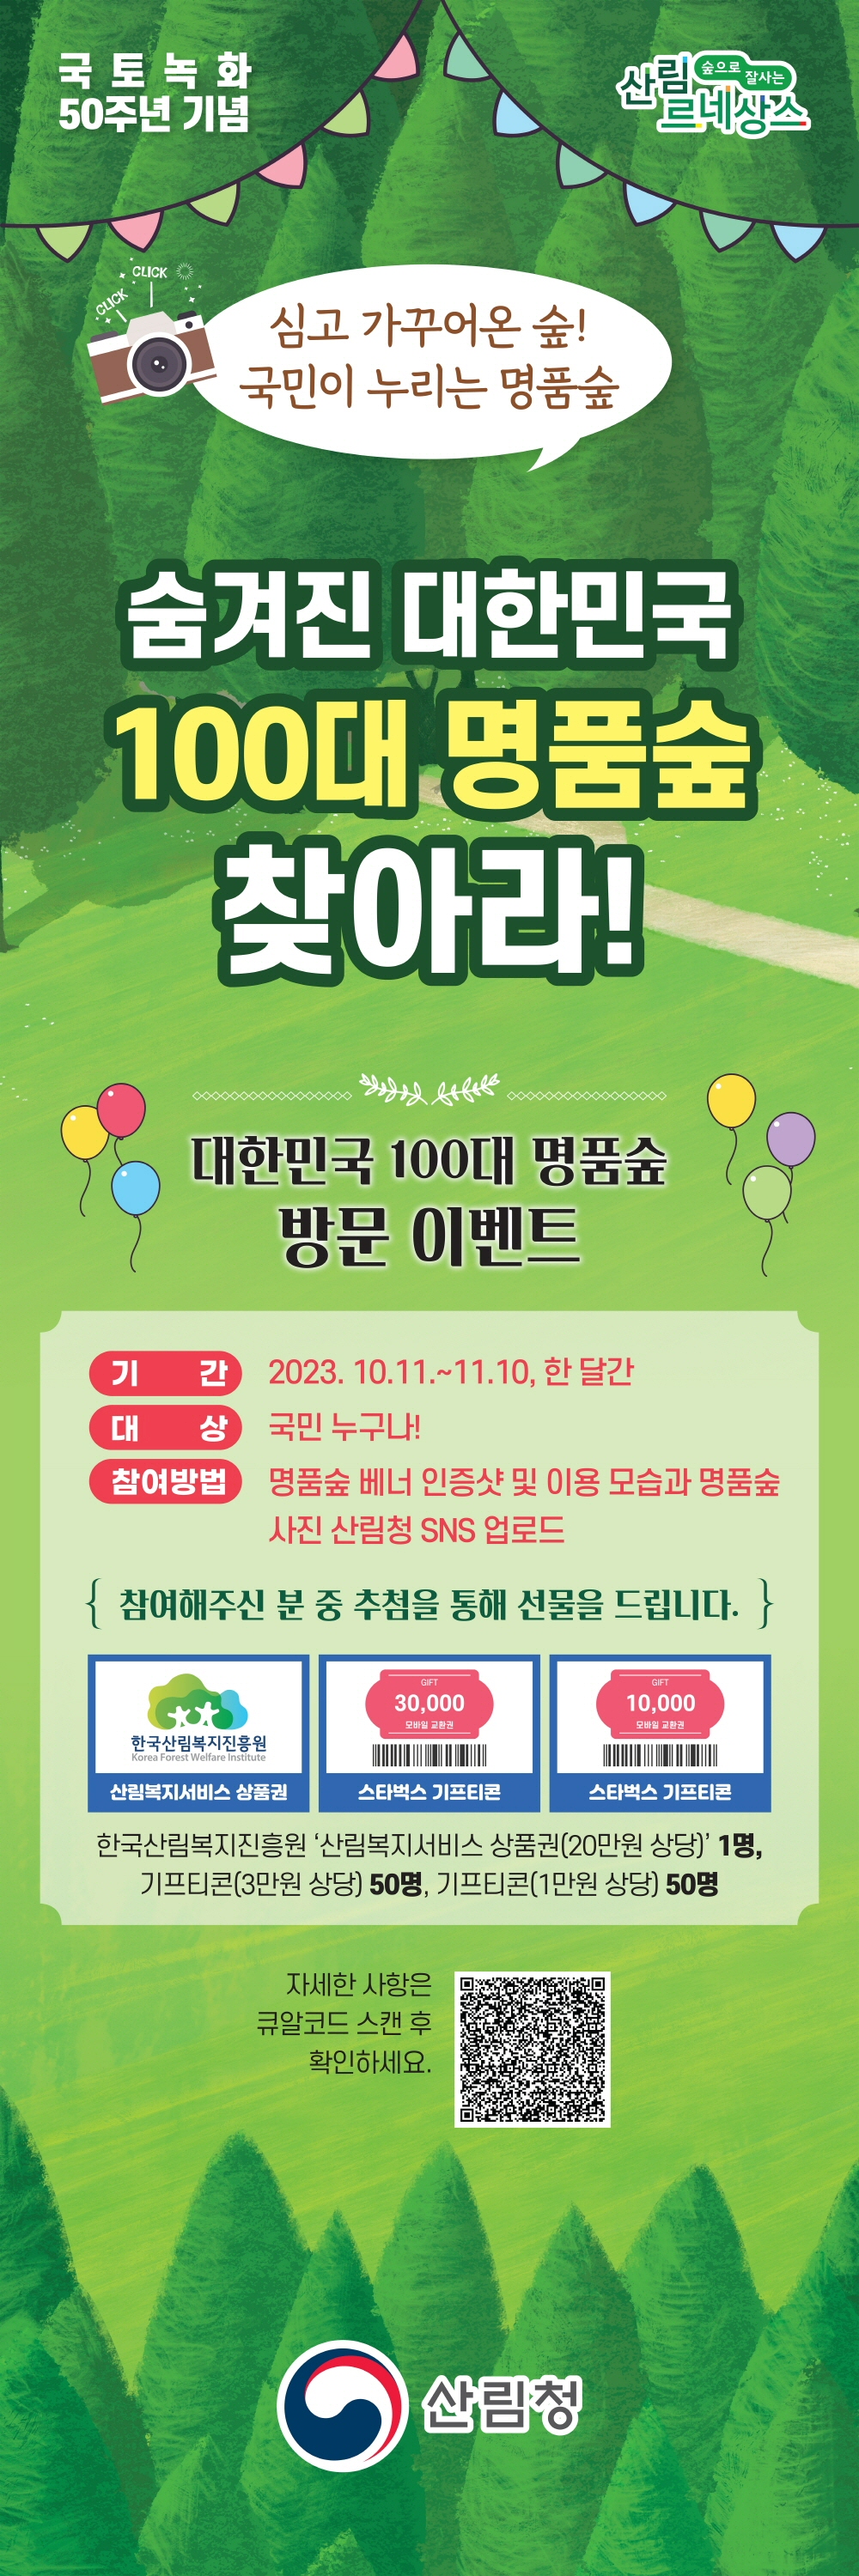 대한민국 100대 명품숲 방문이벤트 포스터